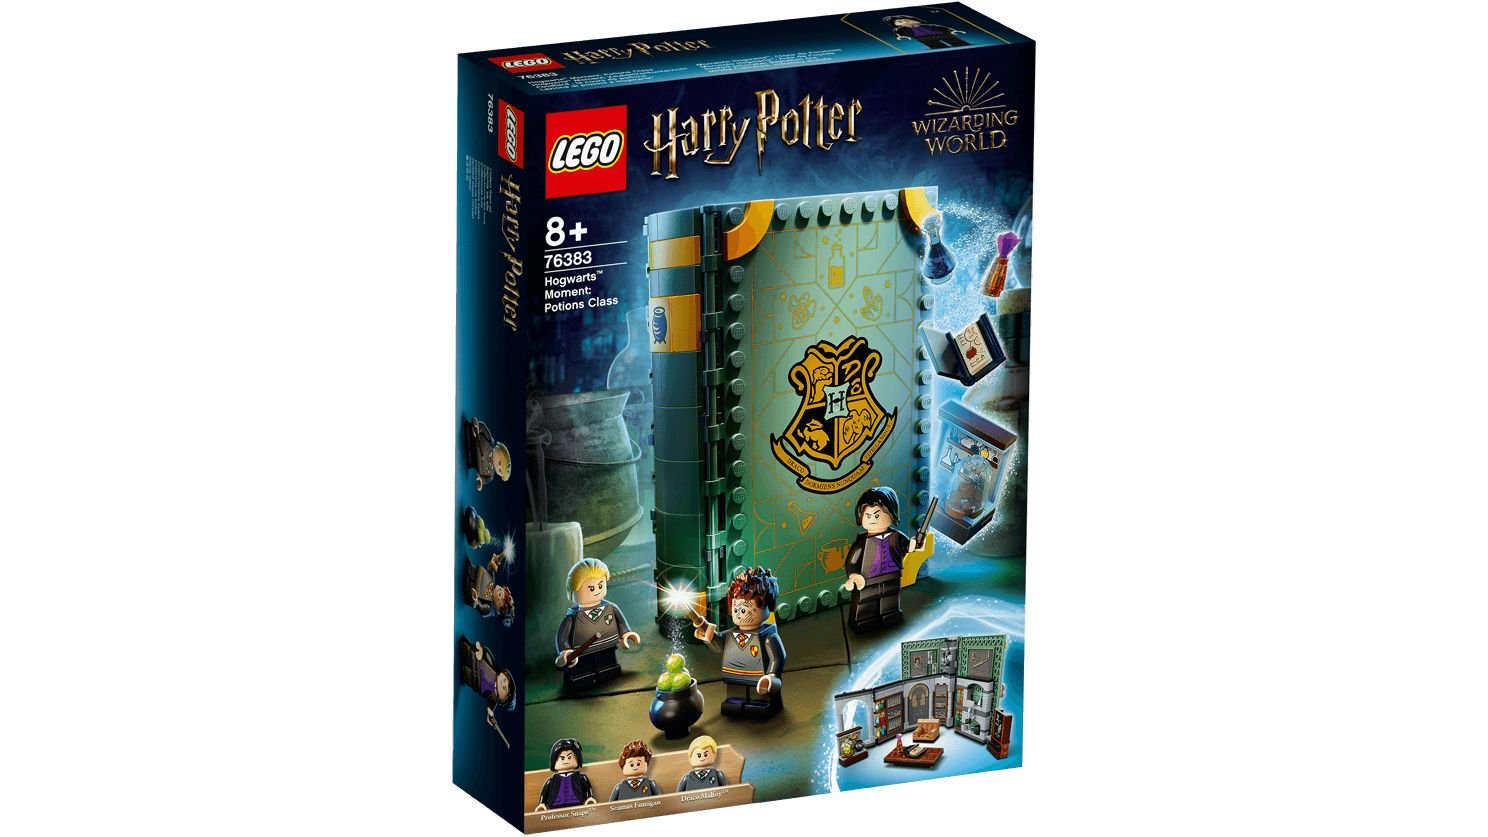 LEGO Harry Potter 76383 Hogwarts™ Moment: Zaubertrankunterricht LEGO_76383_Box1_v29_1488.jpg